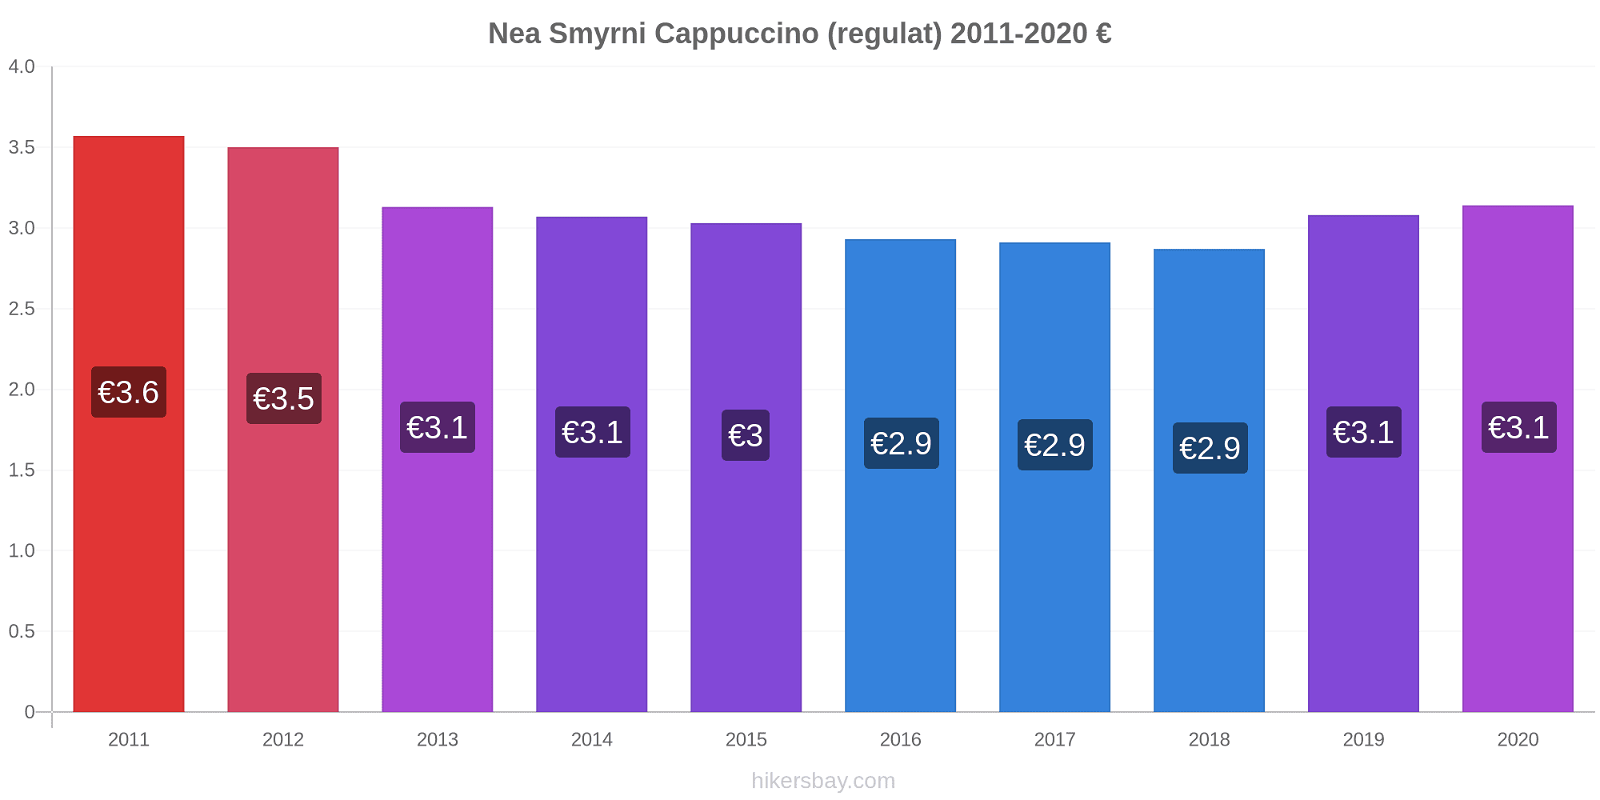 Nea Smyrni modificări de preț Cappuccino (regulat) hikersbay.com